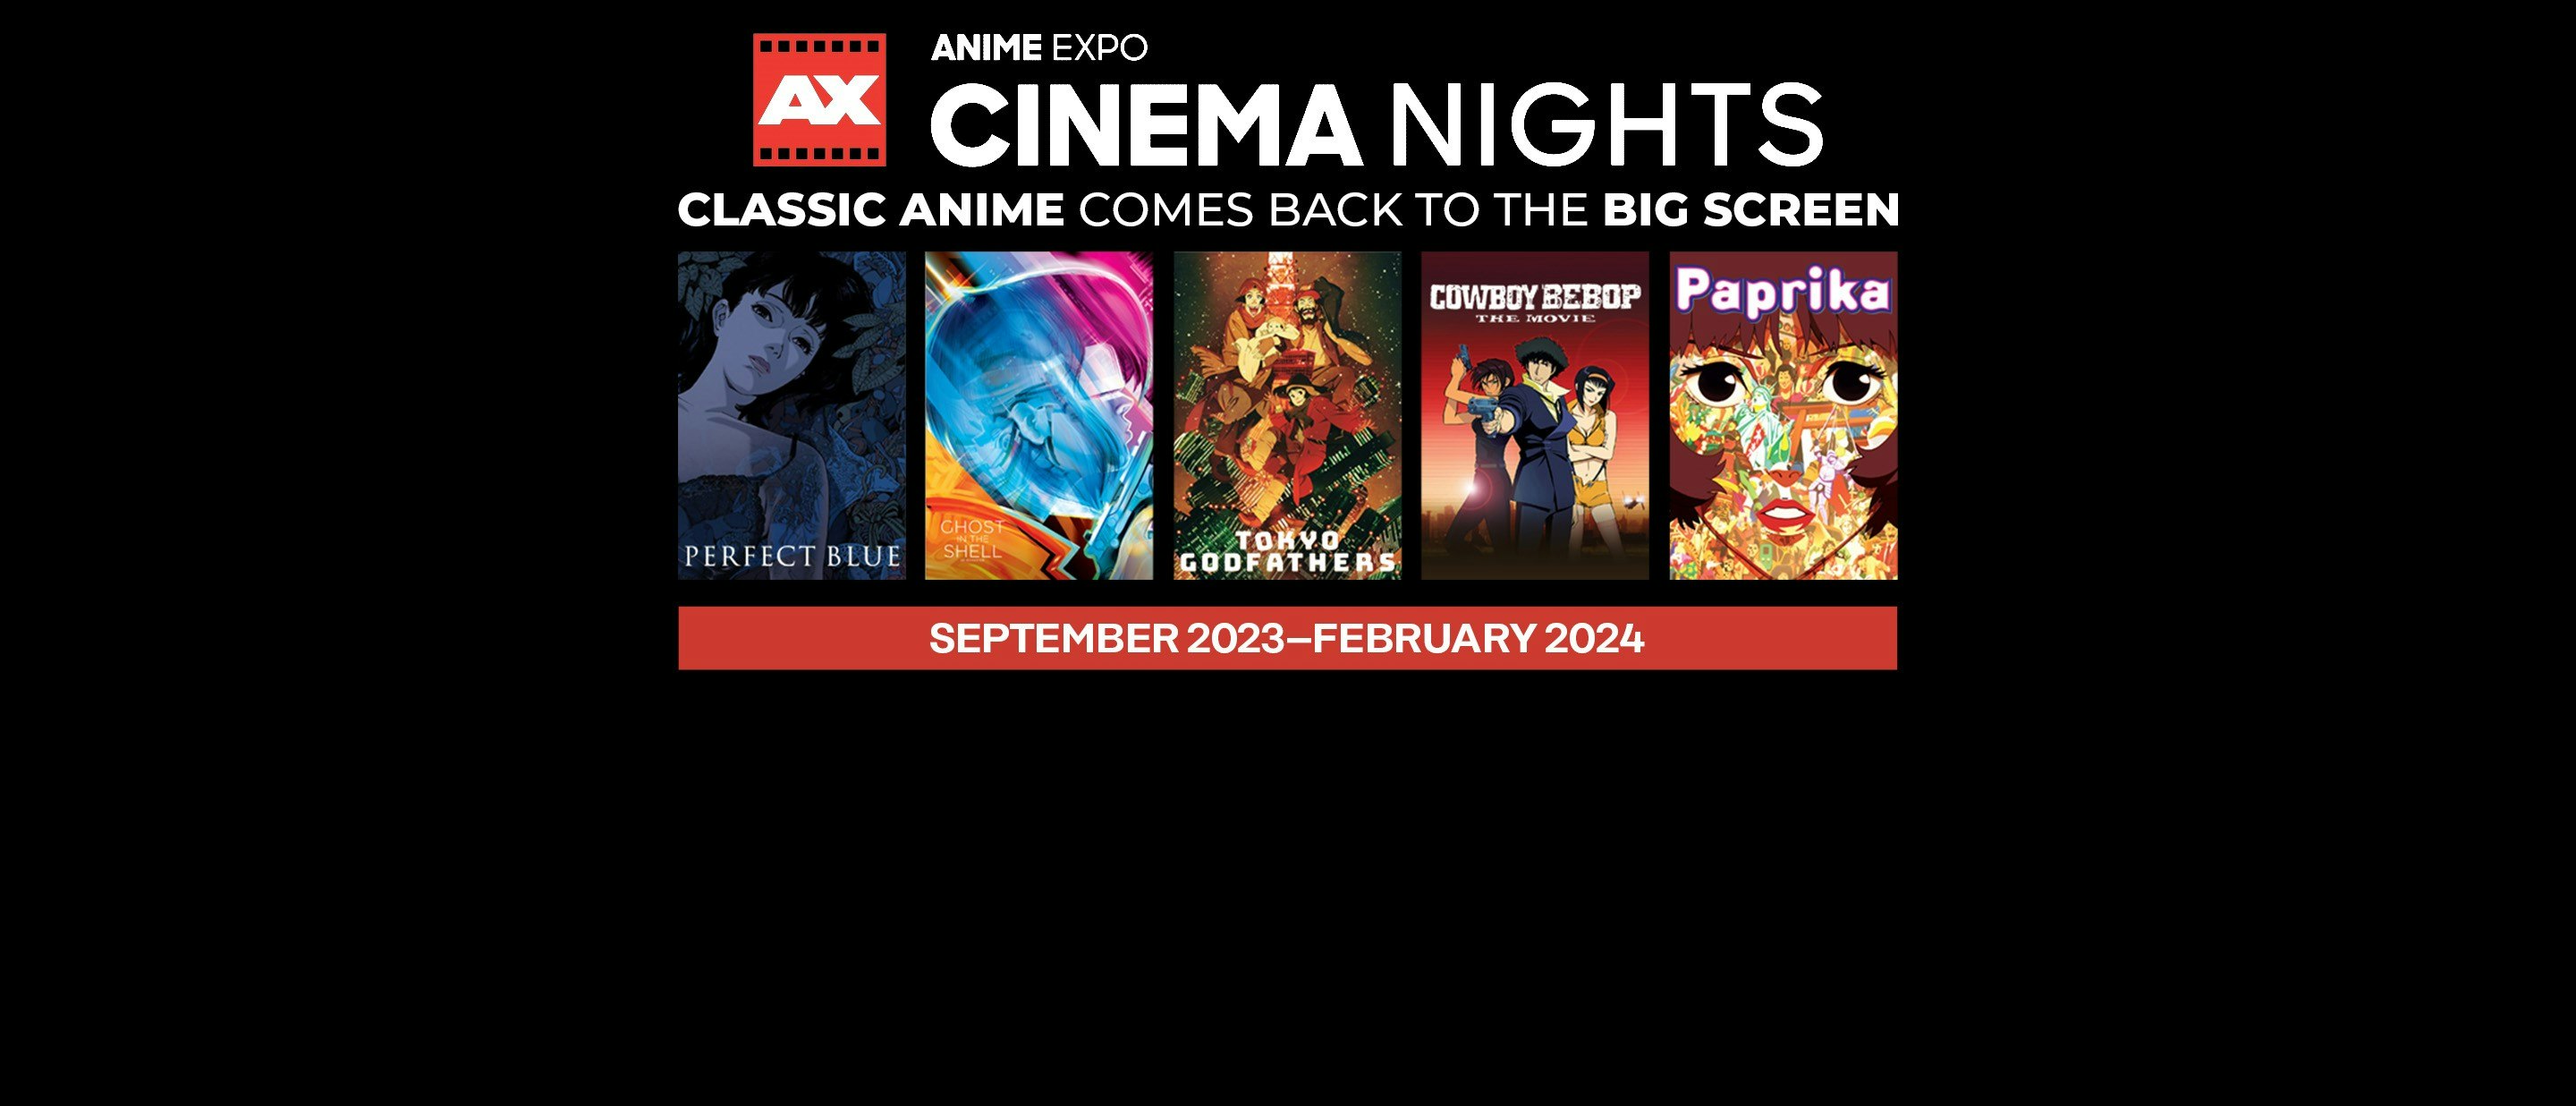 Anime Expo Cinema Nights